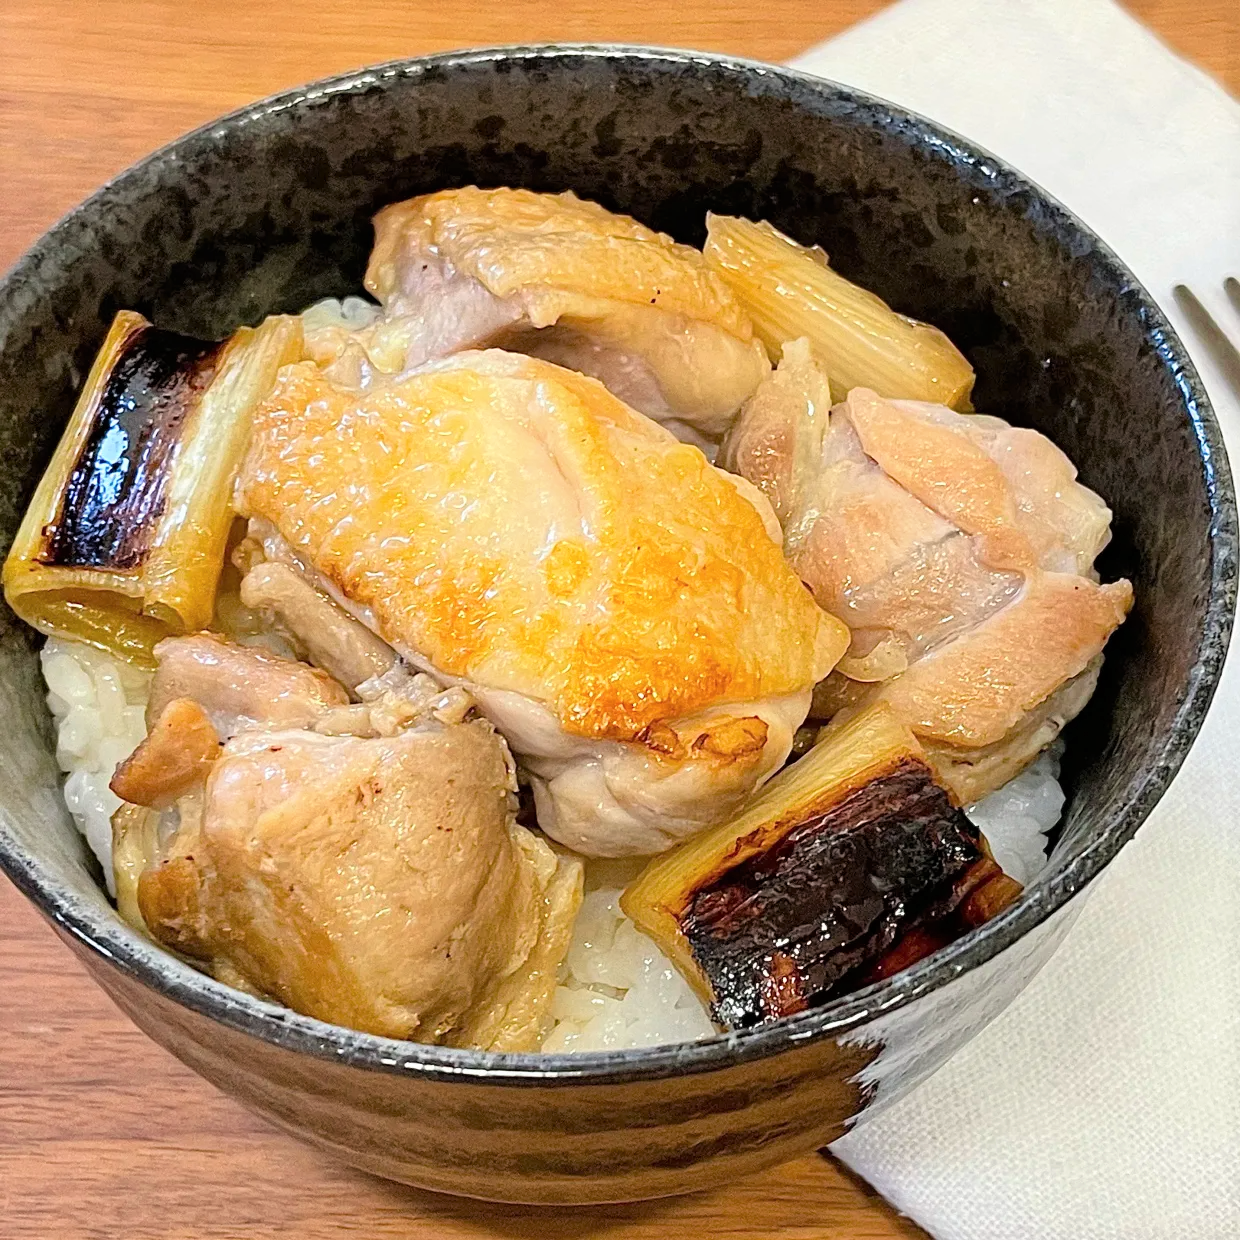  「焼き鳥丼」レシピ 